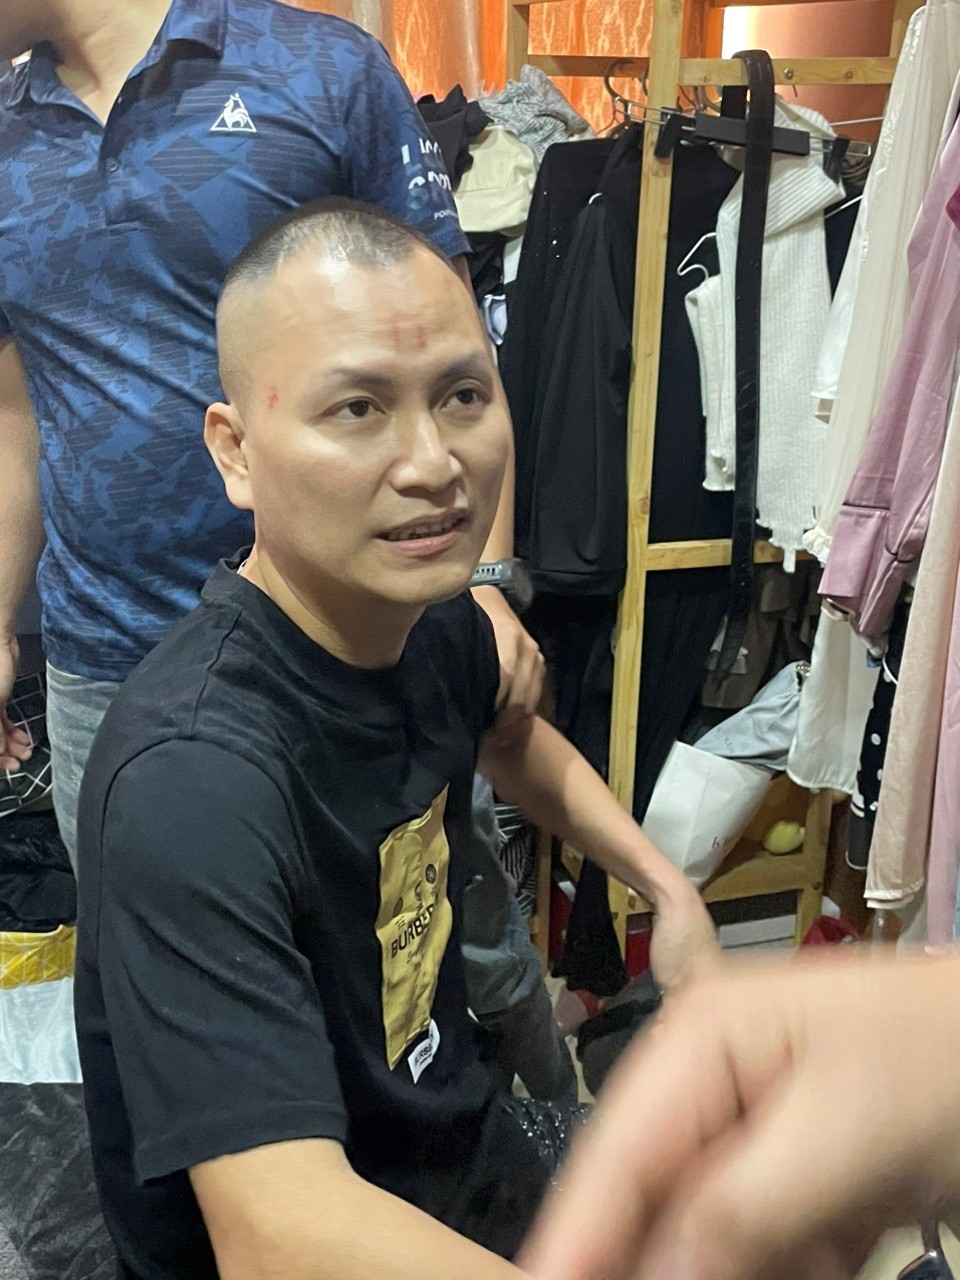 Dương Văn Thao tức Thao “Điên” bị lực lượng cảnh sát đặc nhiệm bắt giữ